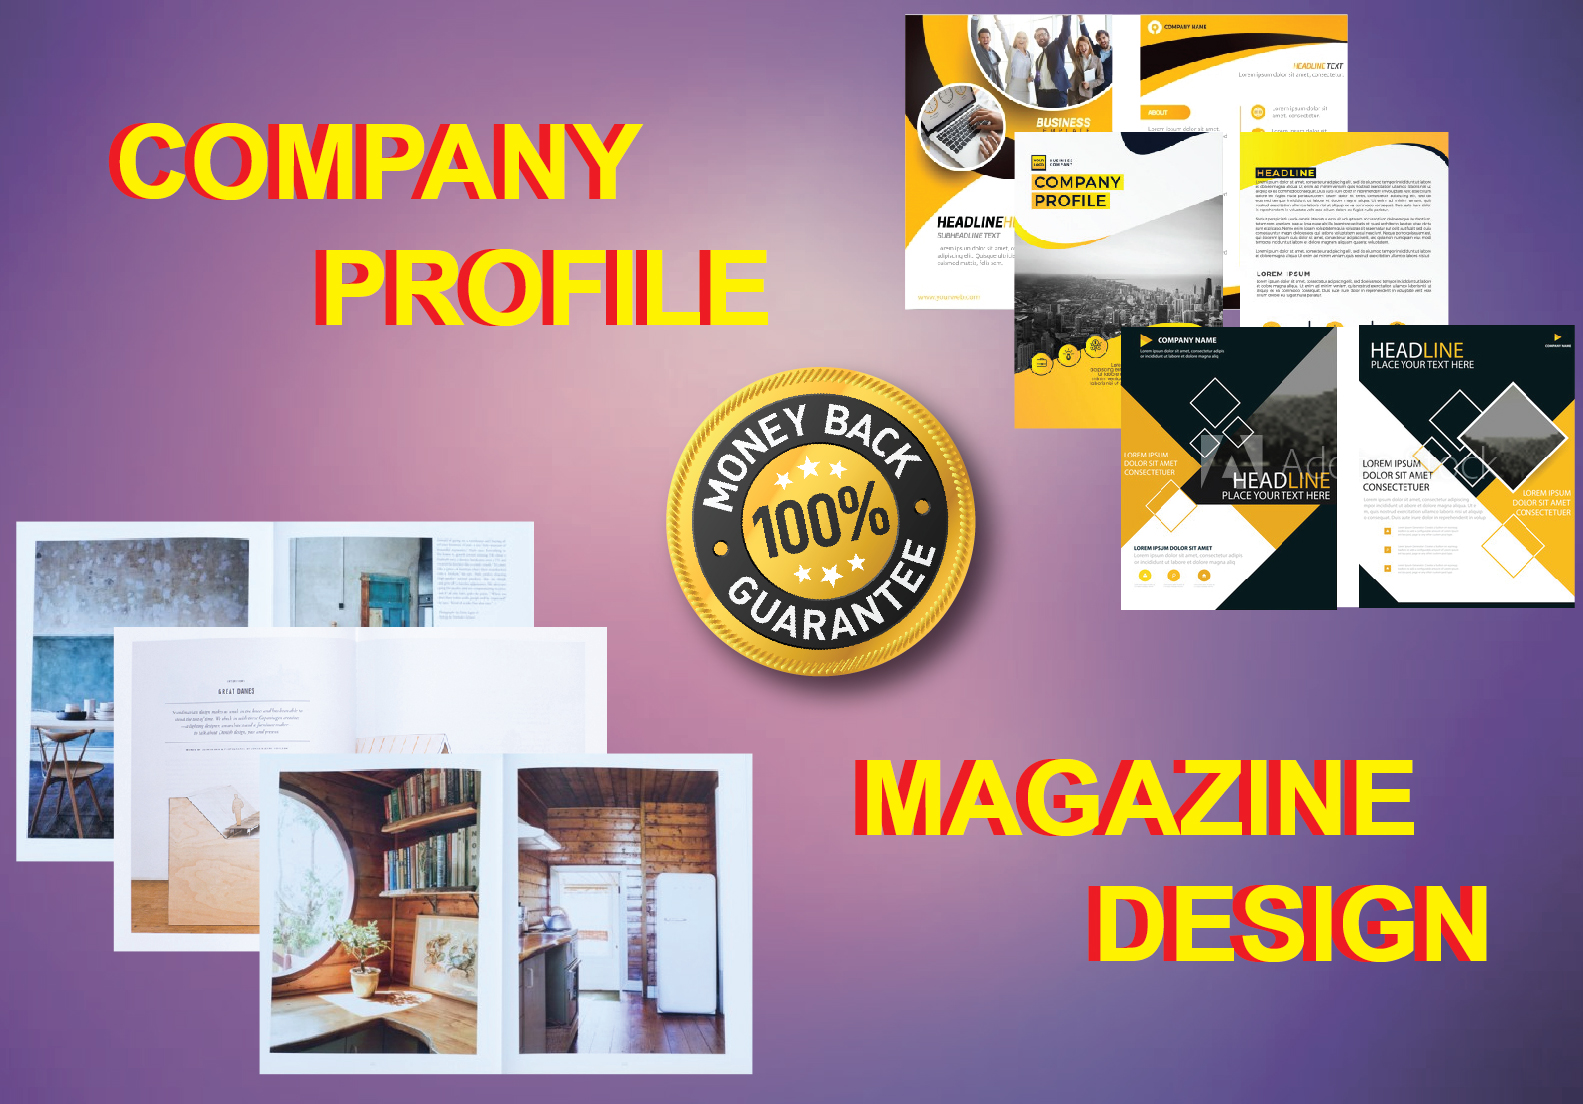 I Will Do Company Profile & Magazine Design